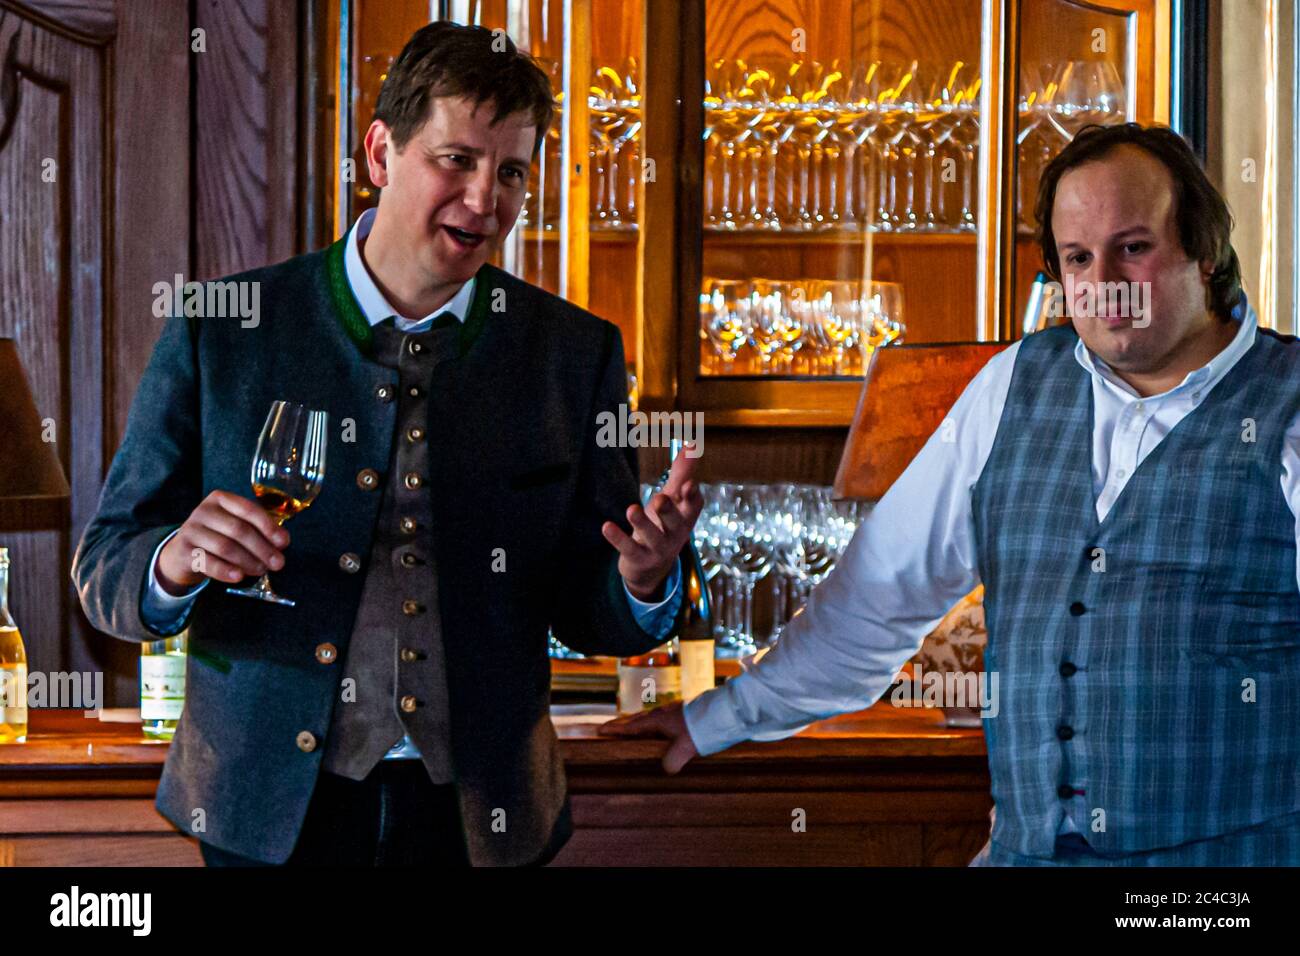 Jörg Geiger (l.) présente ses produits: Le Prisecco sans alcool est depuis longtemps socialement acceptable et une alternative valable au vin et au vin mousseux. Festival gastronomique de Rheingau à Hattenheim, Eltville am Rhein, Allemagne Banque D'Images